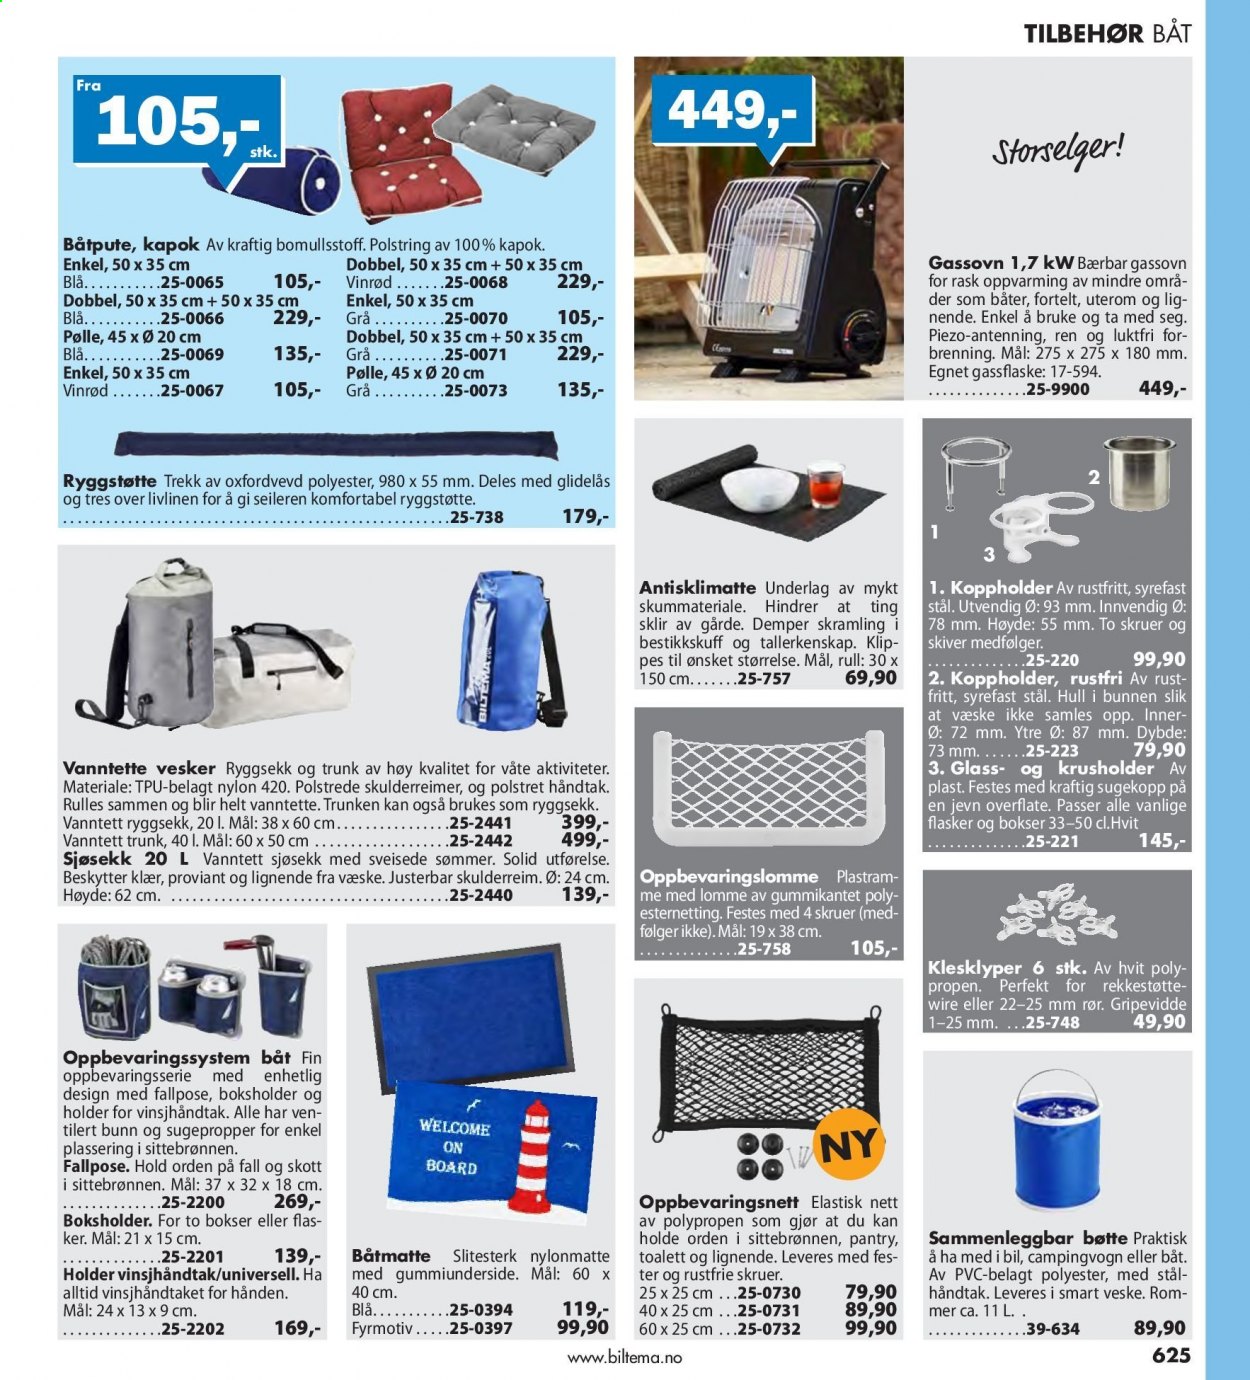 thumbnail - Kundeavis Biltema - Produkter fra tilbudsaviser - veske, skruer. Side 625.